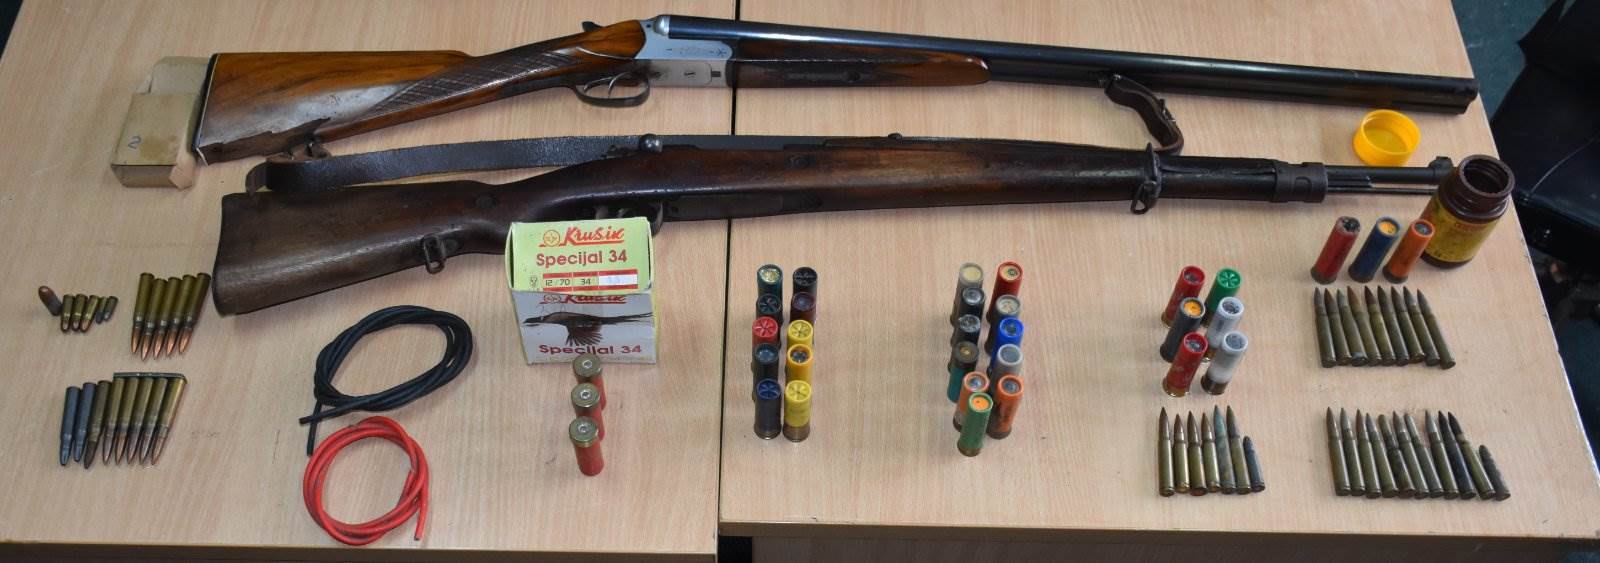  Pronađeno oružje i municija, uhapšena jedna osoba 